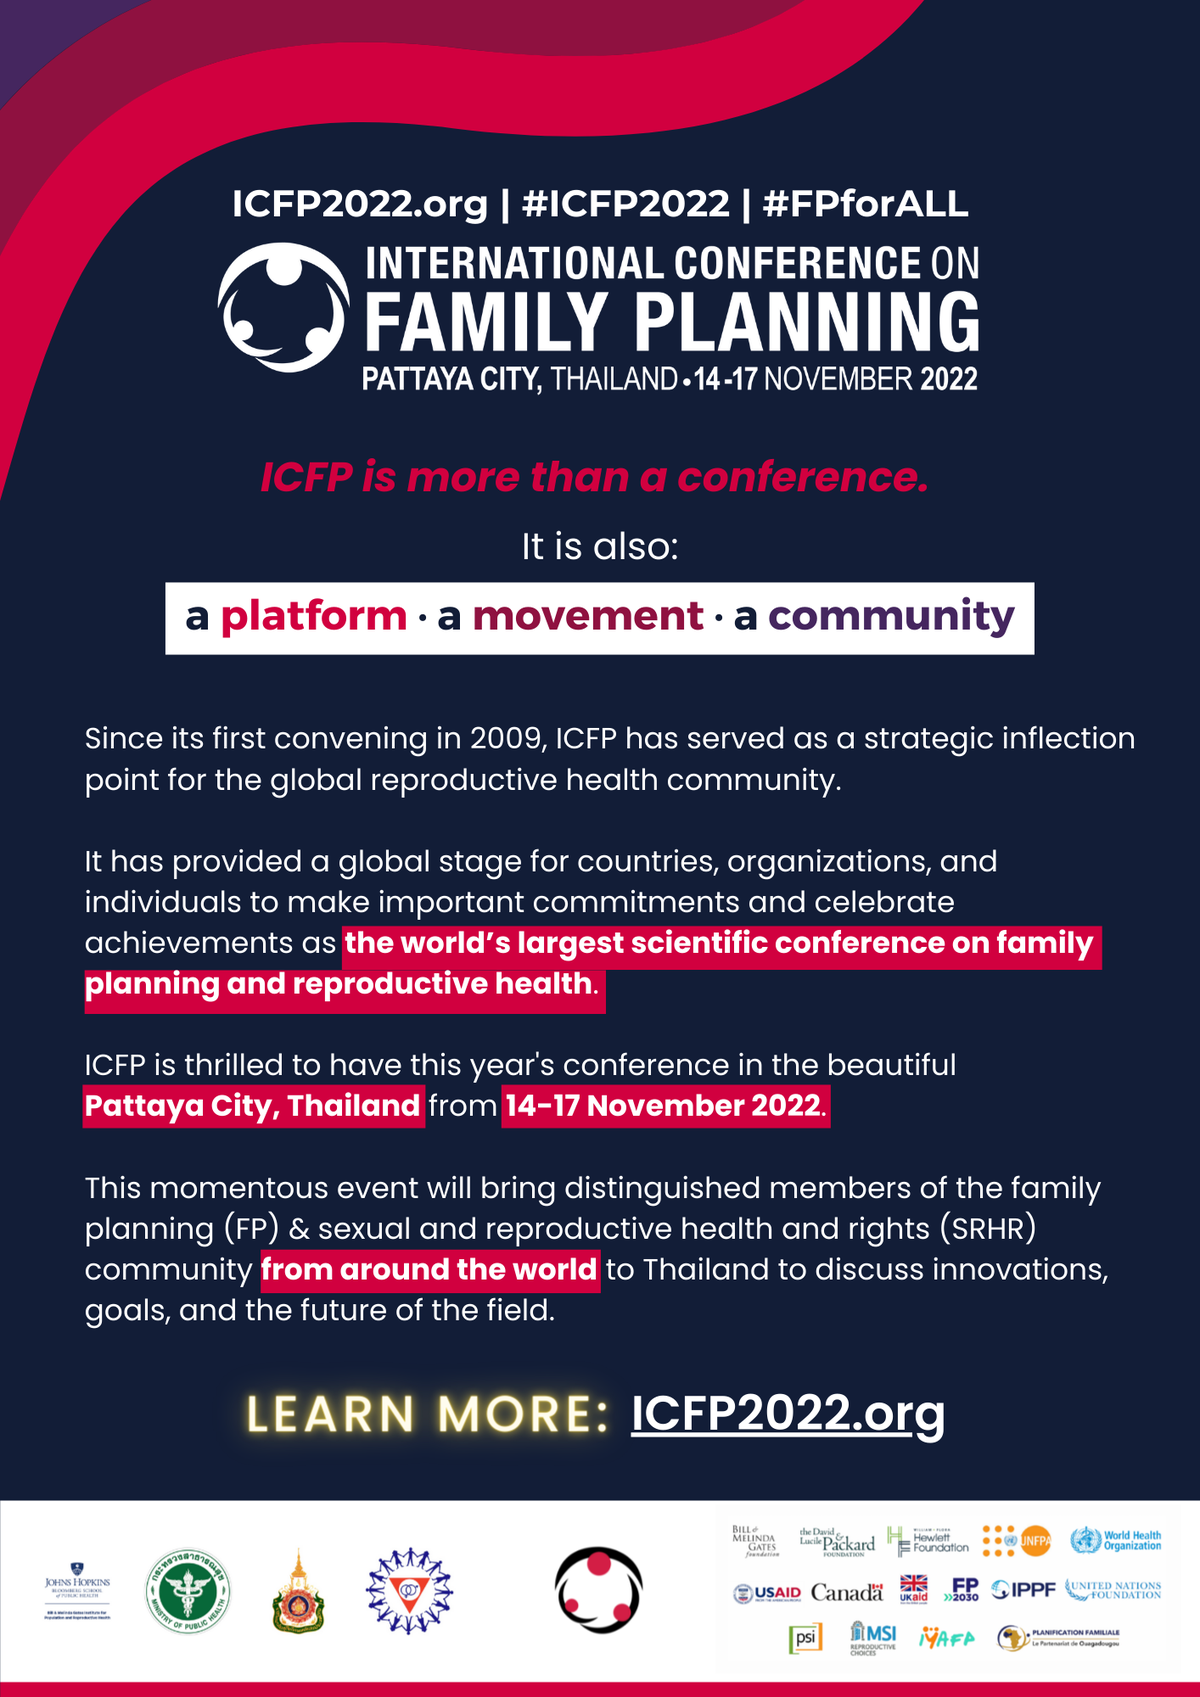 การจัดประชุมวิชาการวางแผนครอบครัวนานาชาติ ครั้งที่ 6 (6th International Conference on Family Planning 2022: ICFP